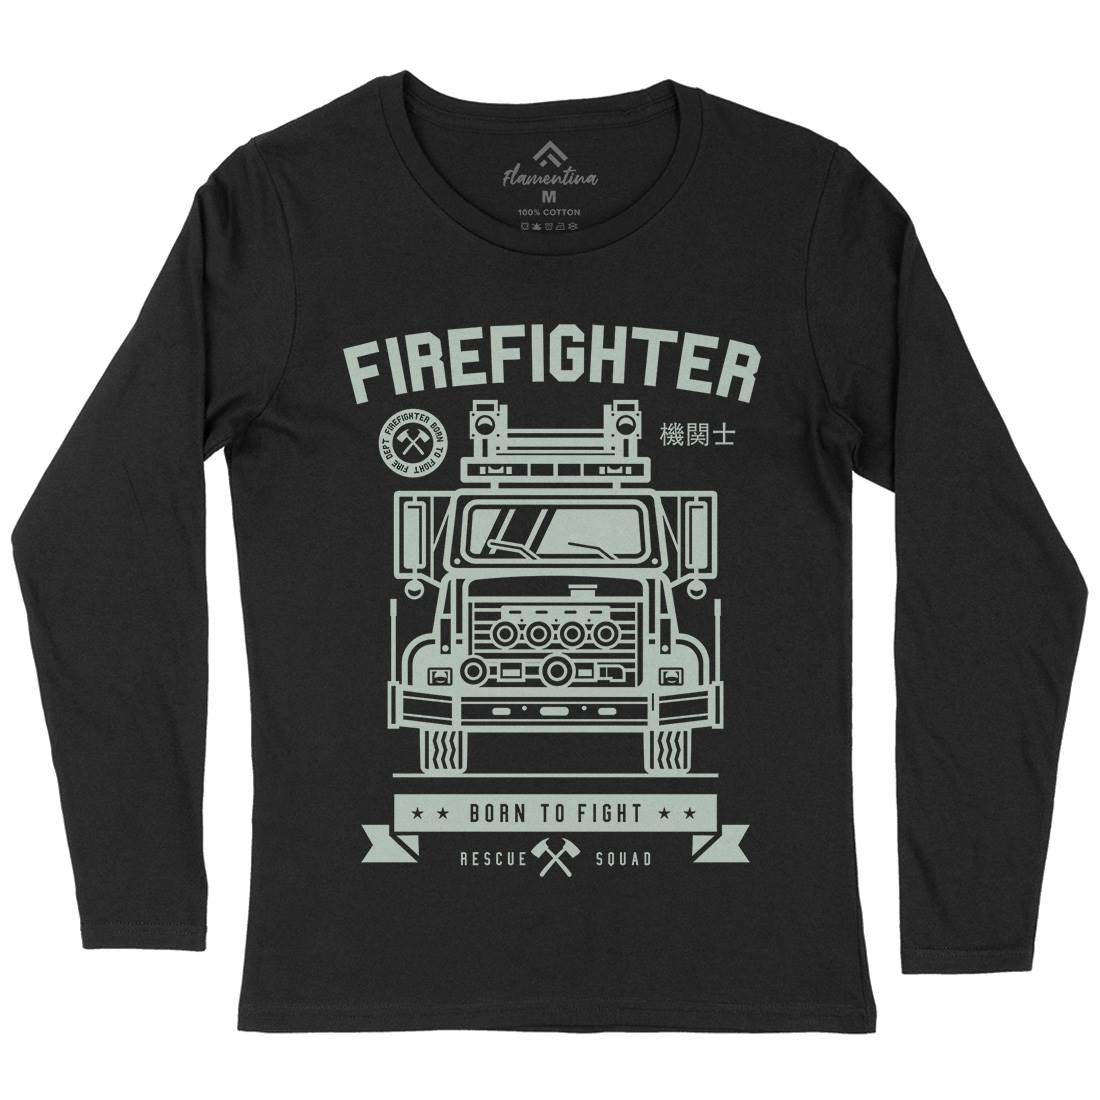 Fire Fighter Womens Long Sleeve T-Shirt Firefighters A229